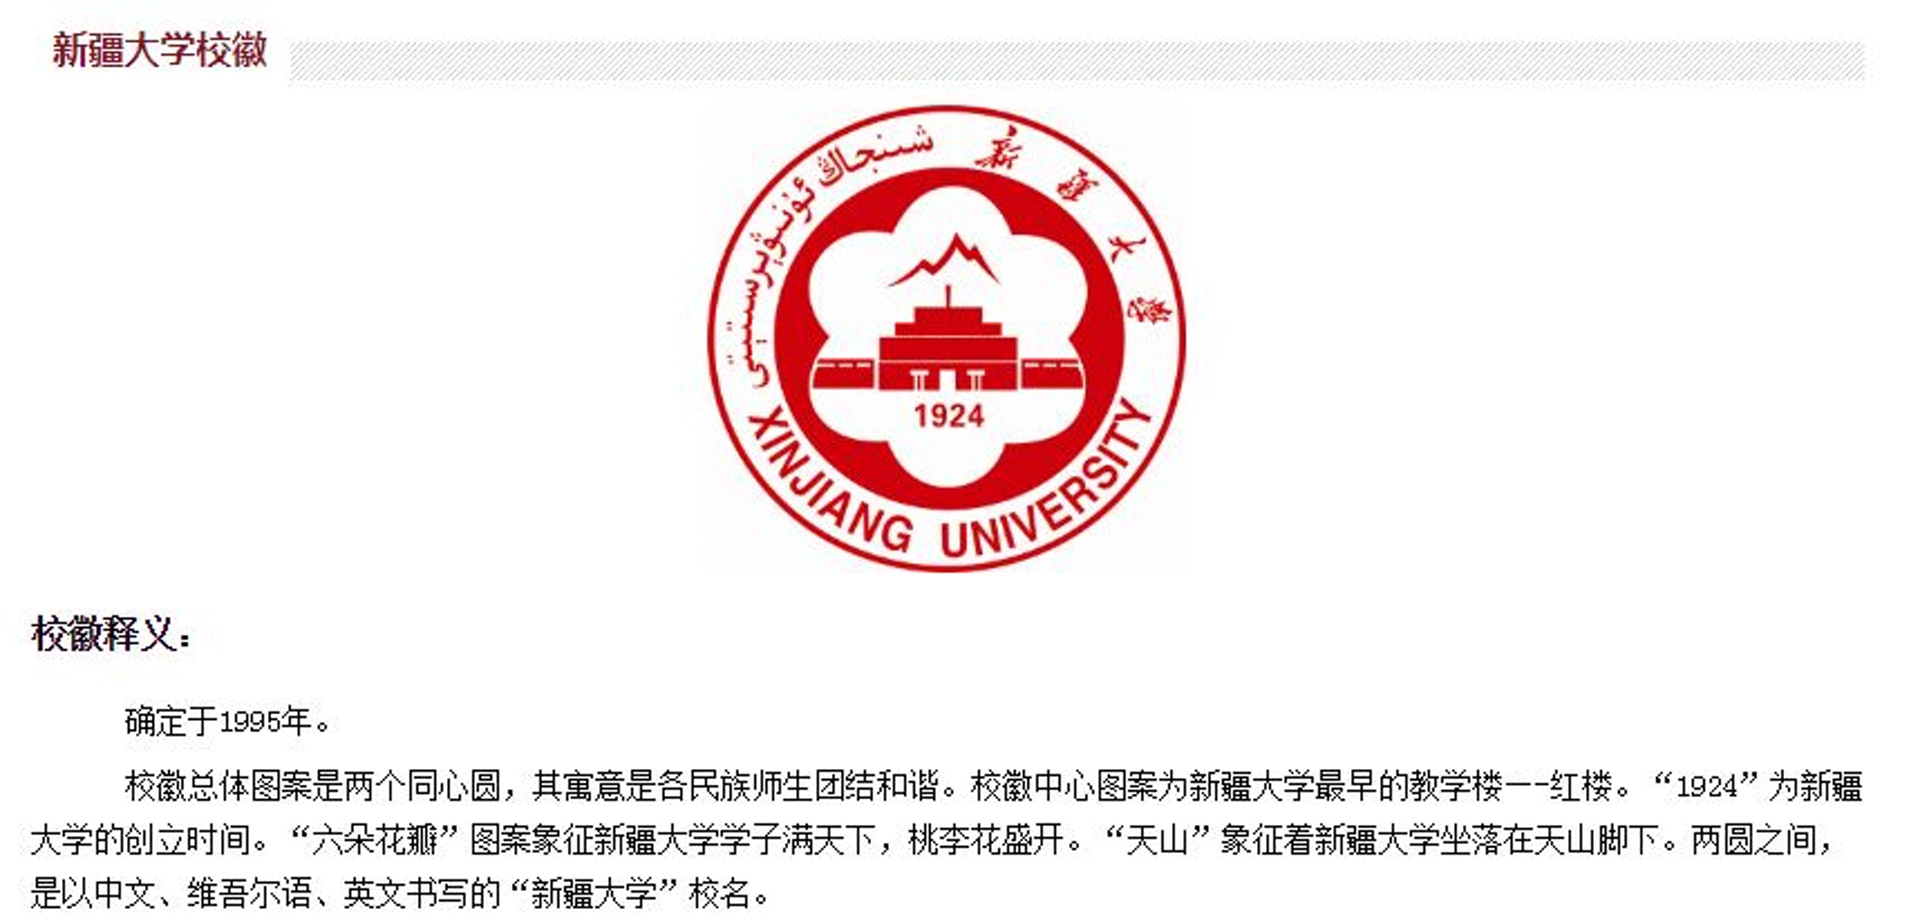 新疆大學官網中的「新大標識」頁面，重新介紹漢、英、維三種文字的校徽，當中的天山圖案亦重現。（網頁截圖）